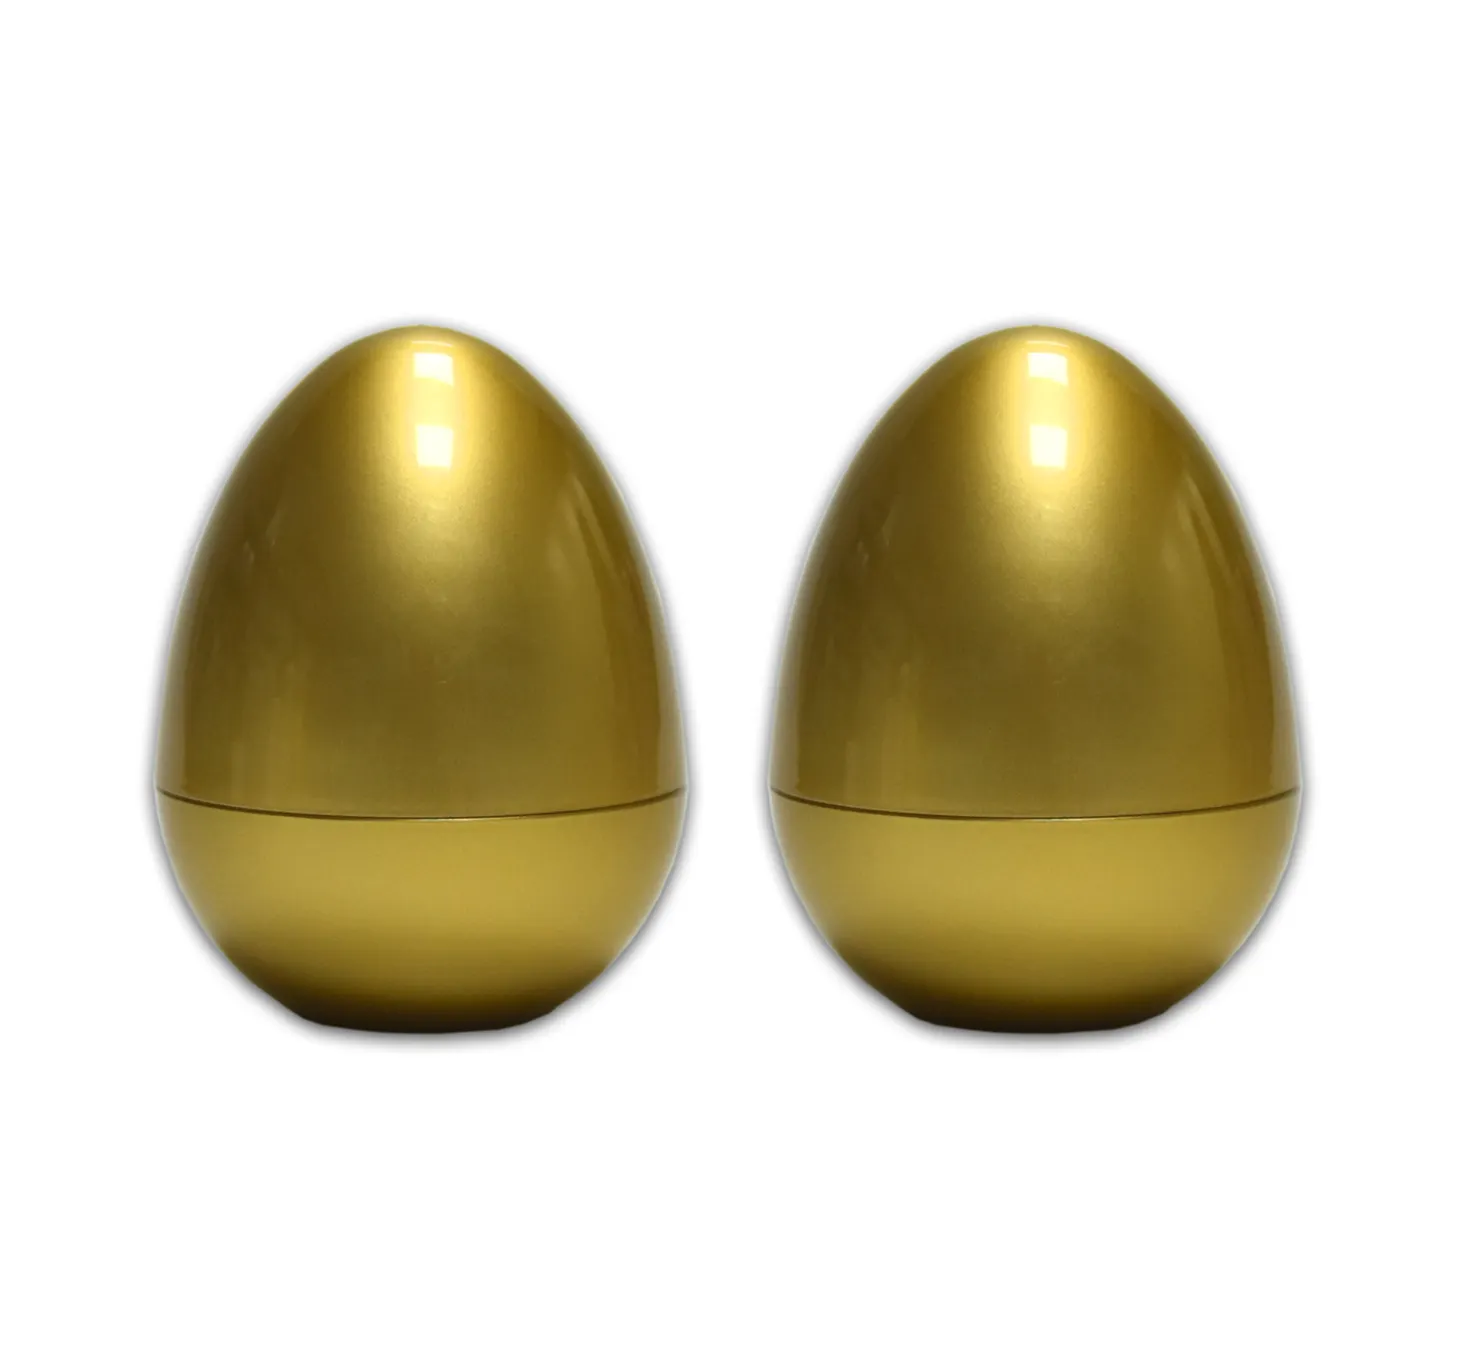 Golden รูปร่างไข่ครีม 30g ครีม Jar Packaging) หัวปั๊ม (Plastic pump) และหัวสเปรย์แบบชุบอลูมิเนียม (aluminium pump) สแตนเลส (บรรจุภัณฑ์สำหรับ Facial Care Skin Care ขวดโลชั่น